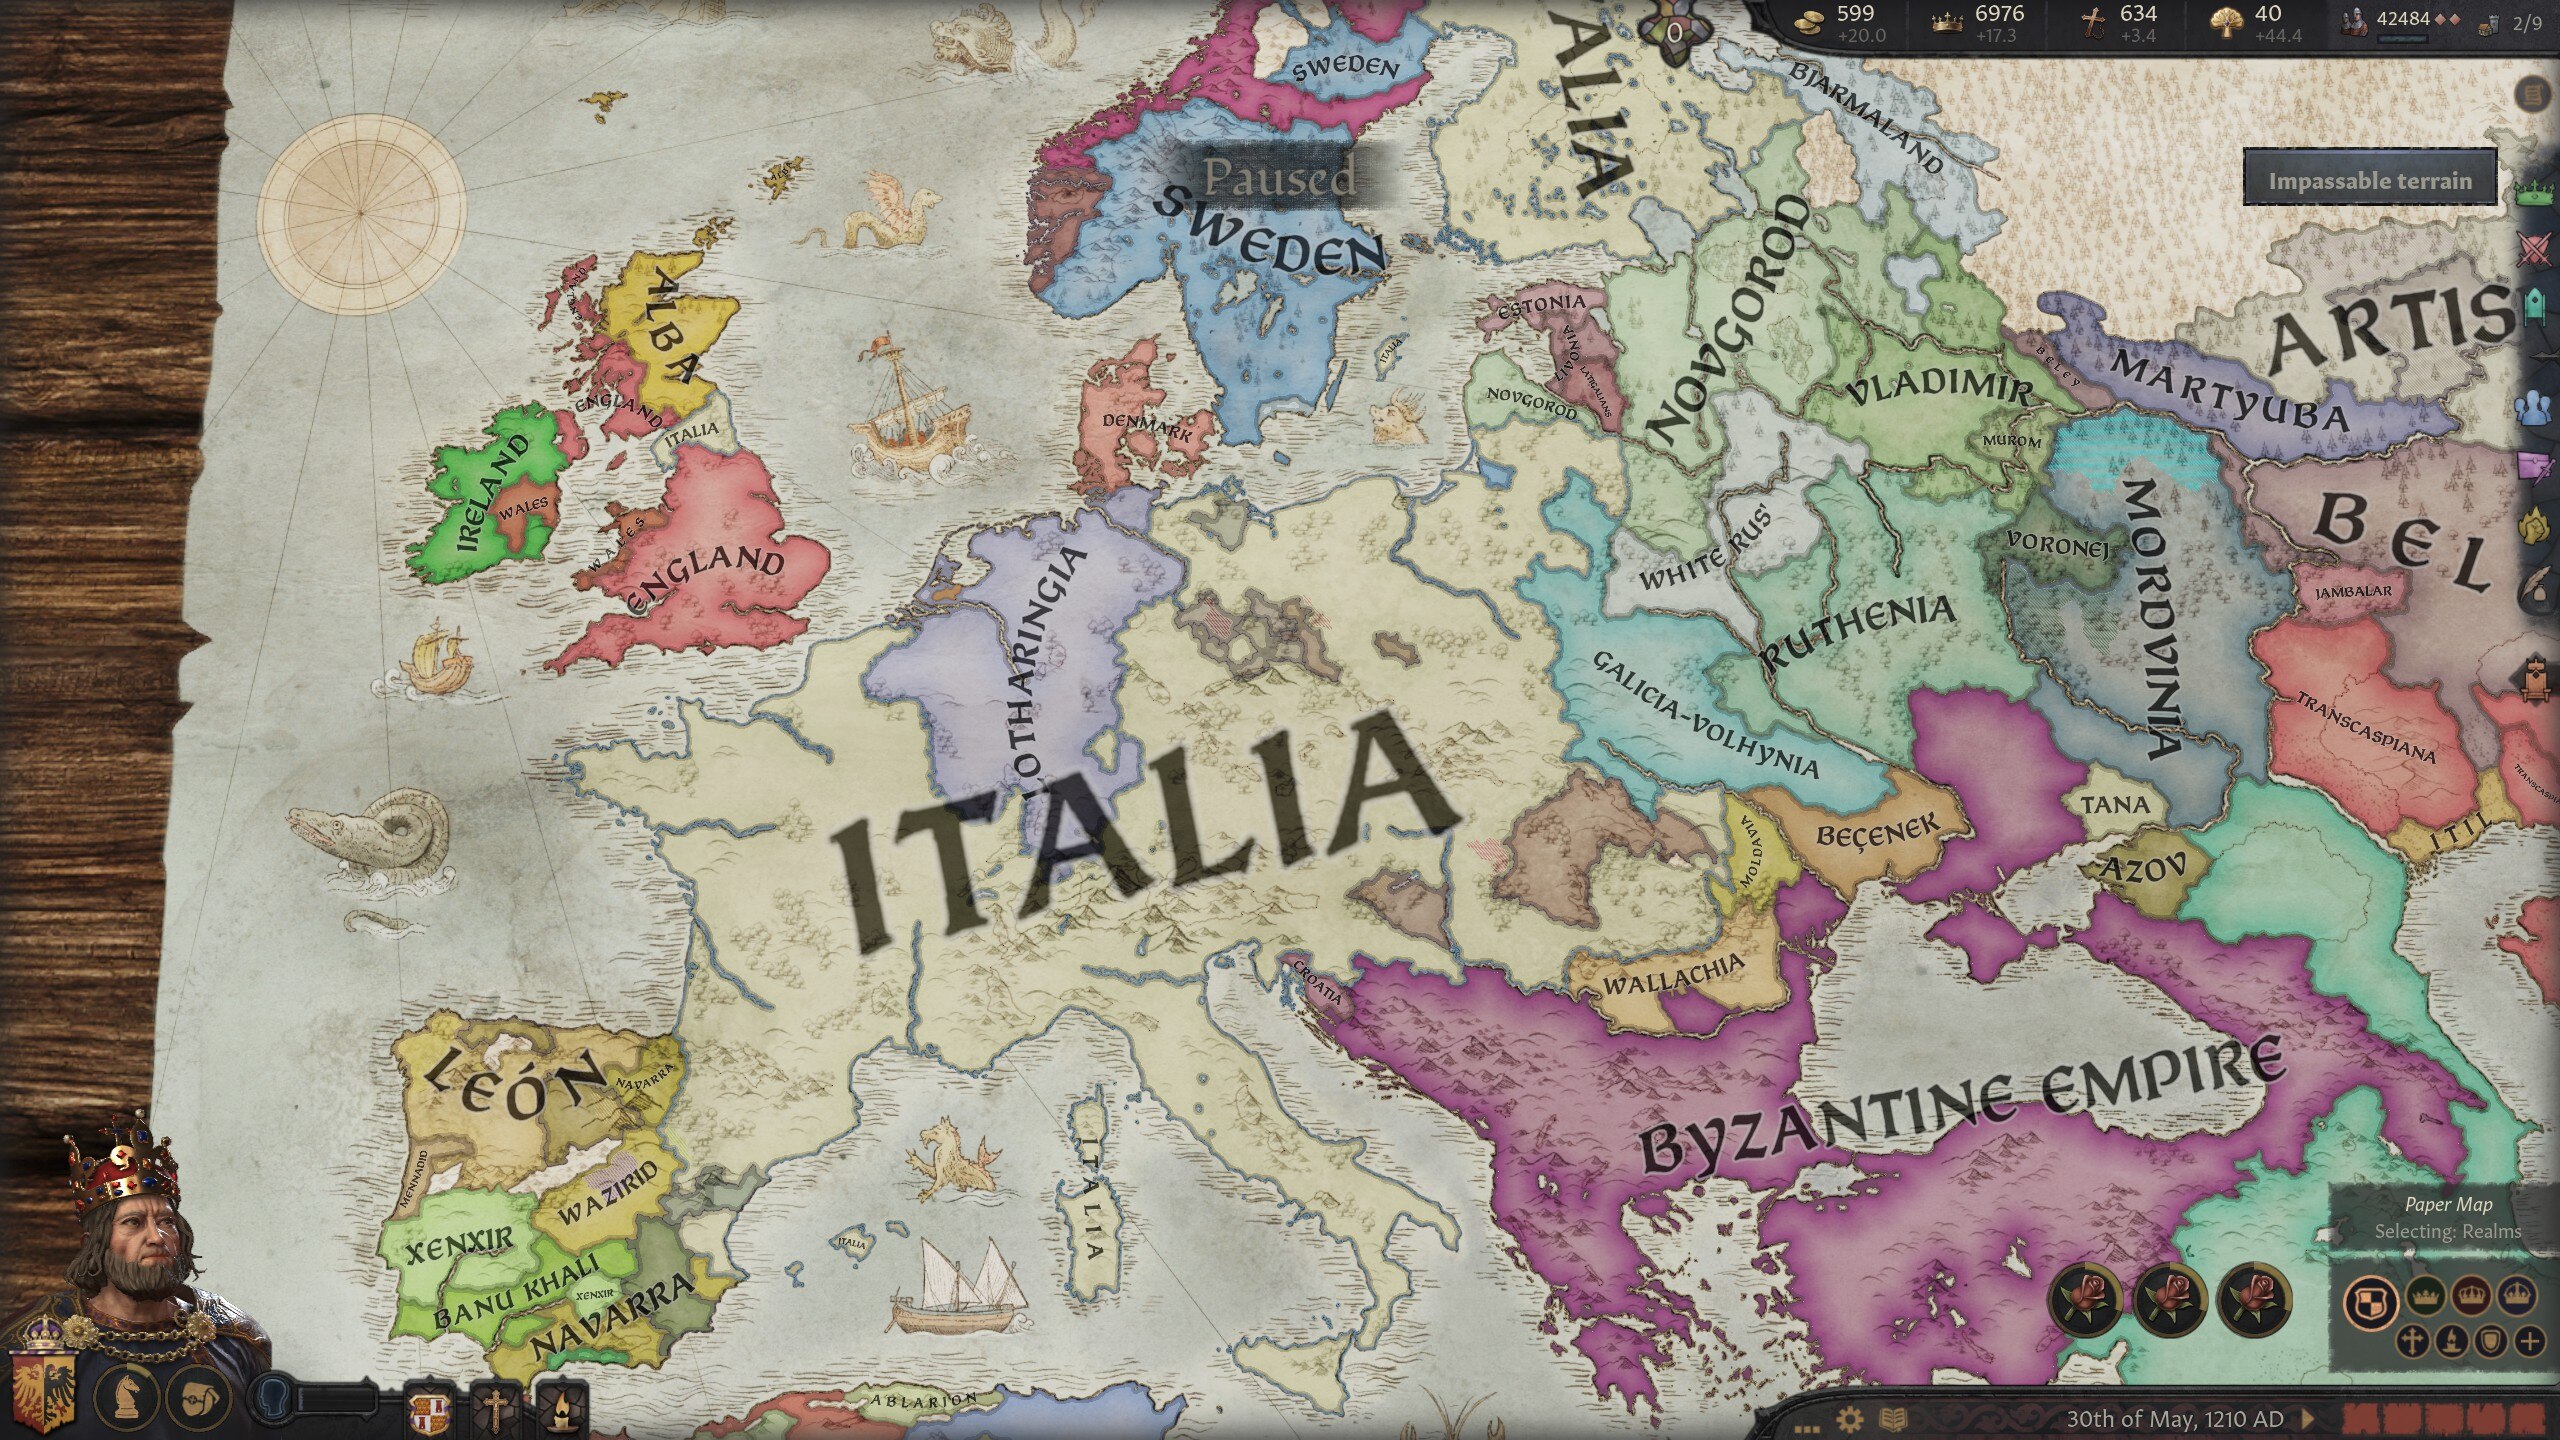 The Empire of Italia